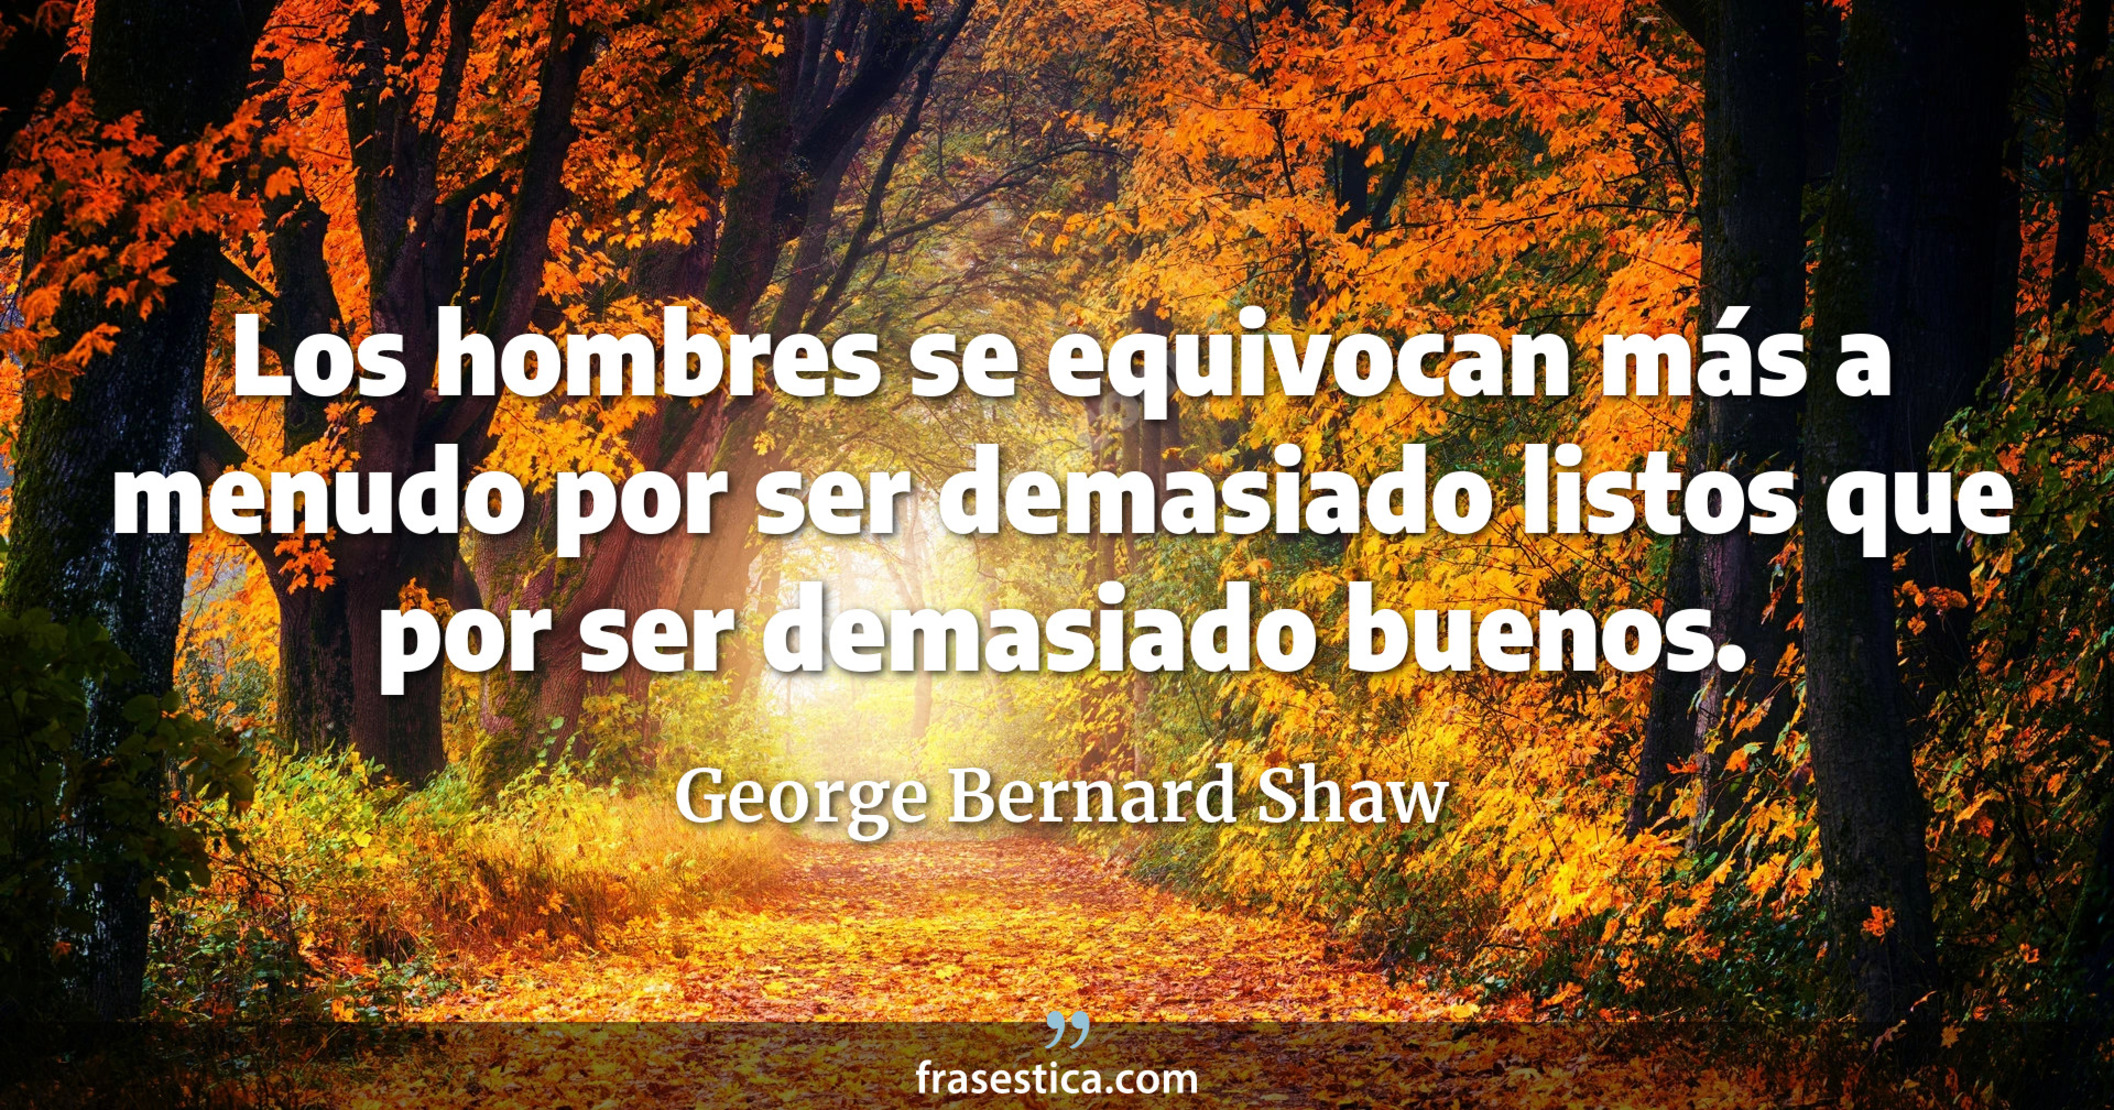 Los hombres se equivocan más a menudo por ser demasiado listos que por ser demasiado buenos. - George Bernard Shaw